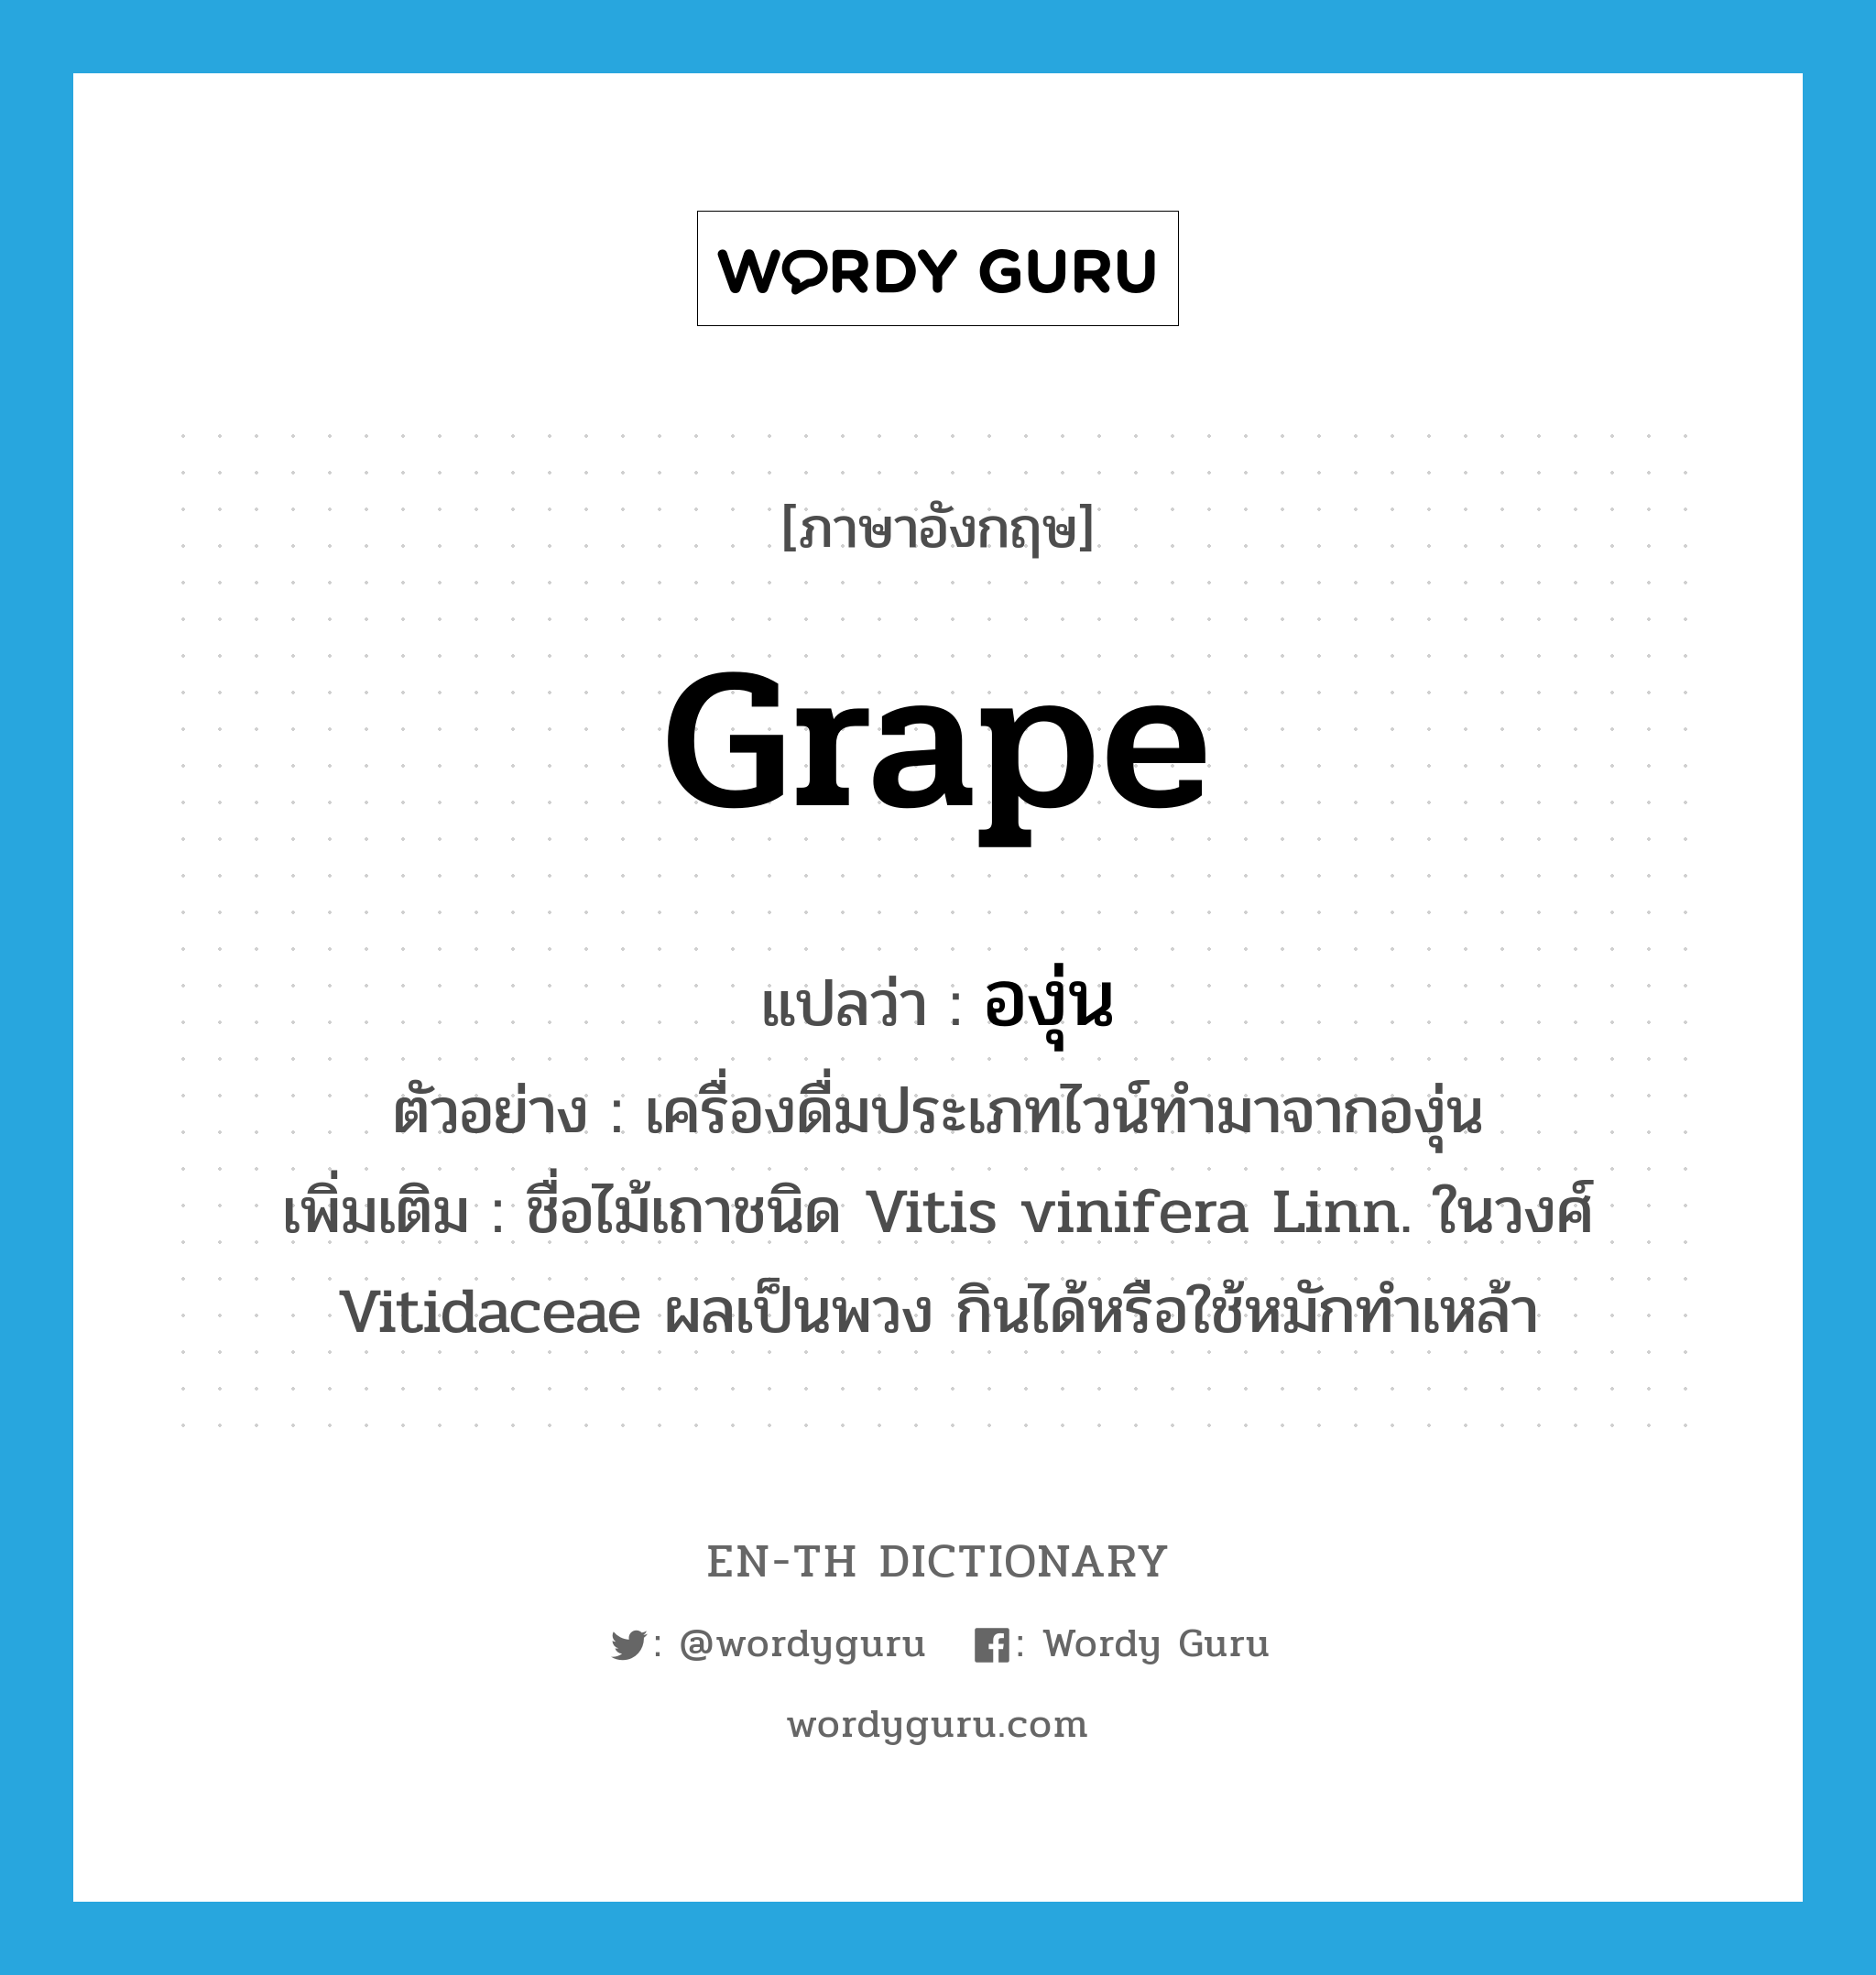 grape แปลว่า?, คำศัพท์ภาษาอังกฤษ grape แปลว่า องุ่น ประเภท N ตัวอย่าง เครื่องดื่มประเภทไวน์ทำมาจากองุ่น เพิ่มเติม ชื่อไม้เถาชนิด Vitis vinifera Linn. ในวงศ์ Vitidaceae ผลเป็นพวง กินได้หรือใช้หมักทำเหล้า หมวด N